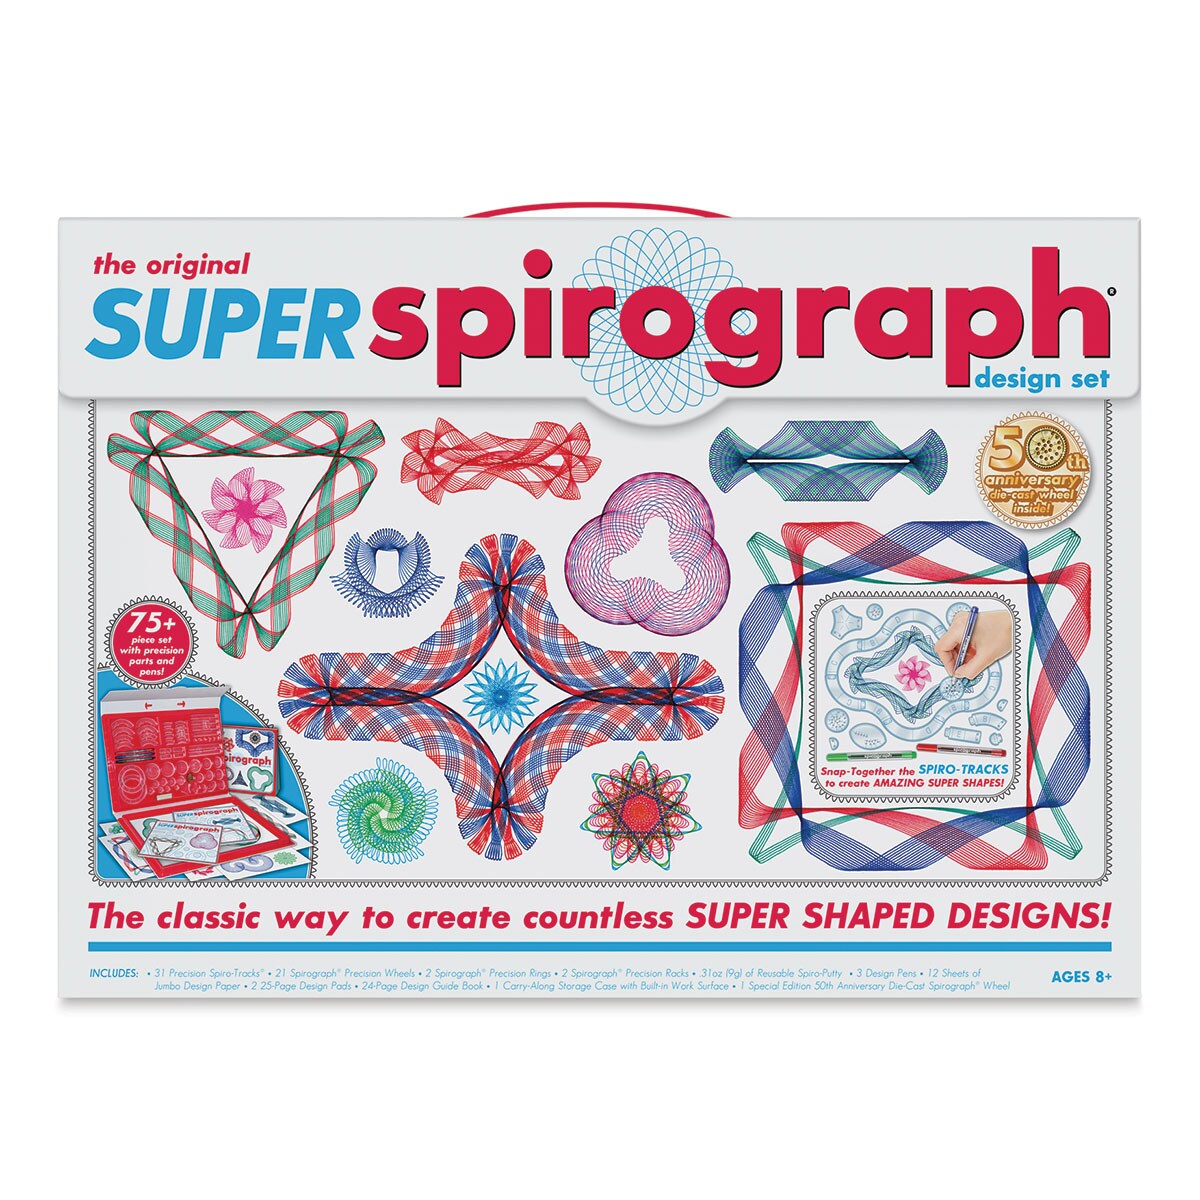 Super Original Spirograph Design Set